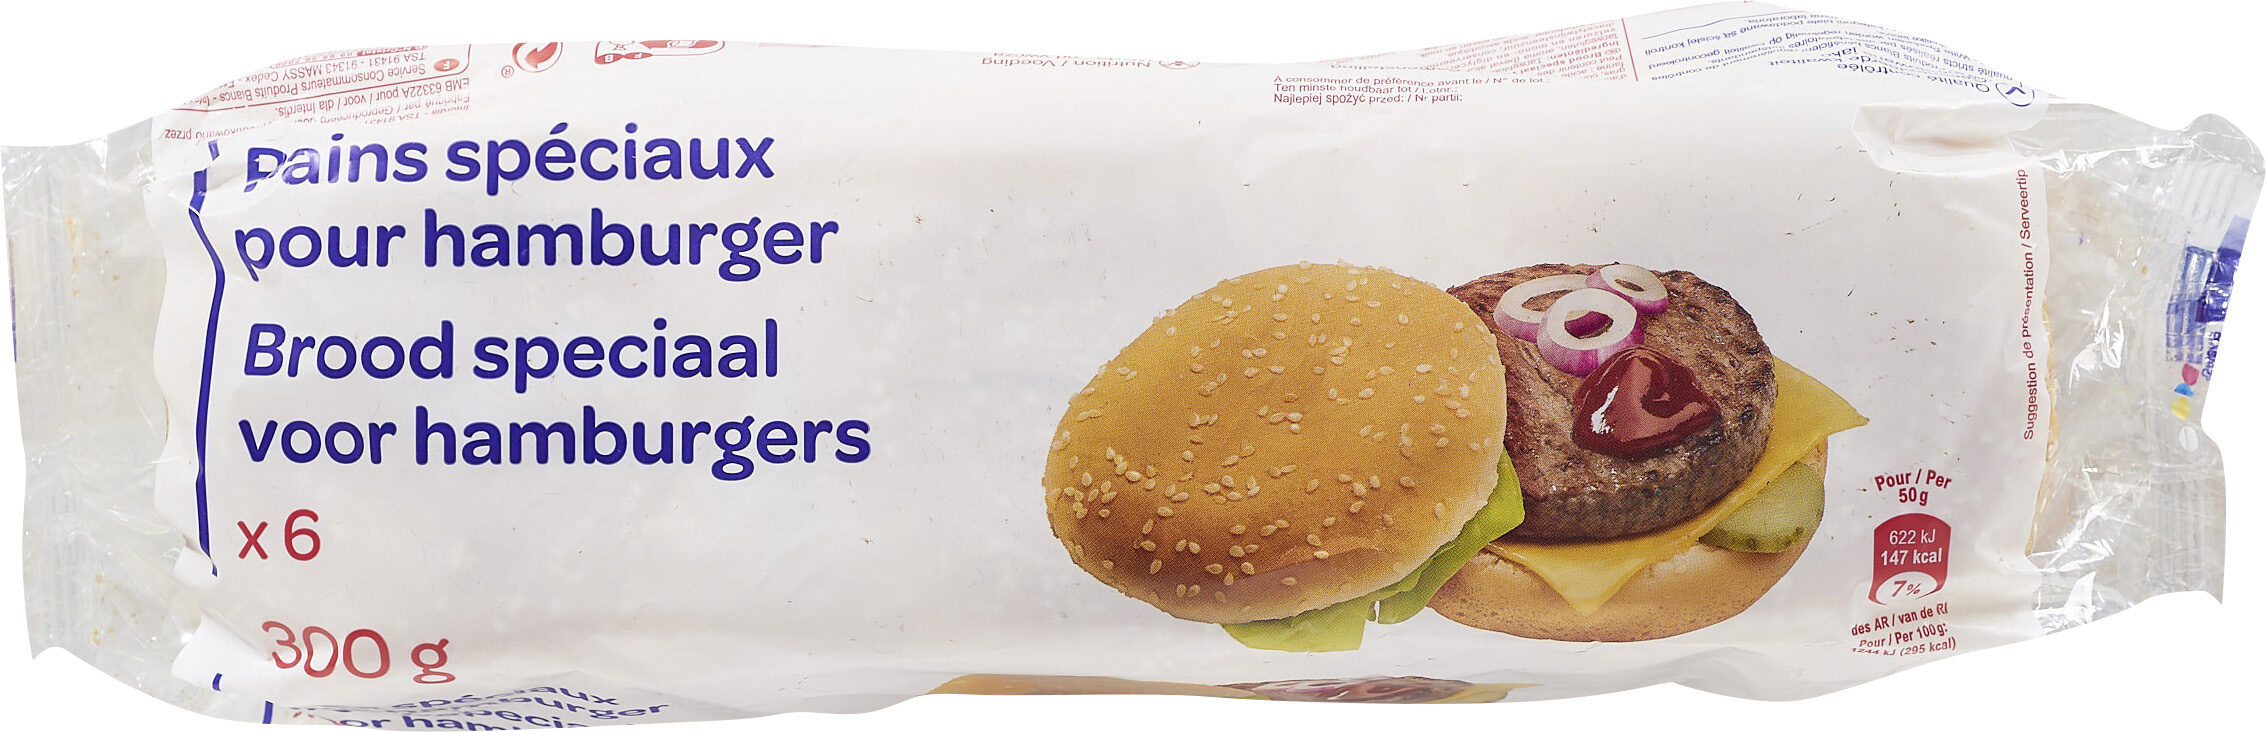 Pains spéciaux pour hamburger - Producto - fr